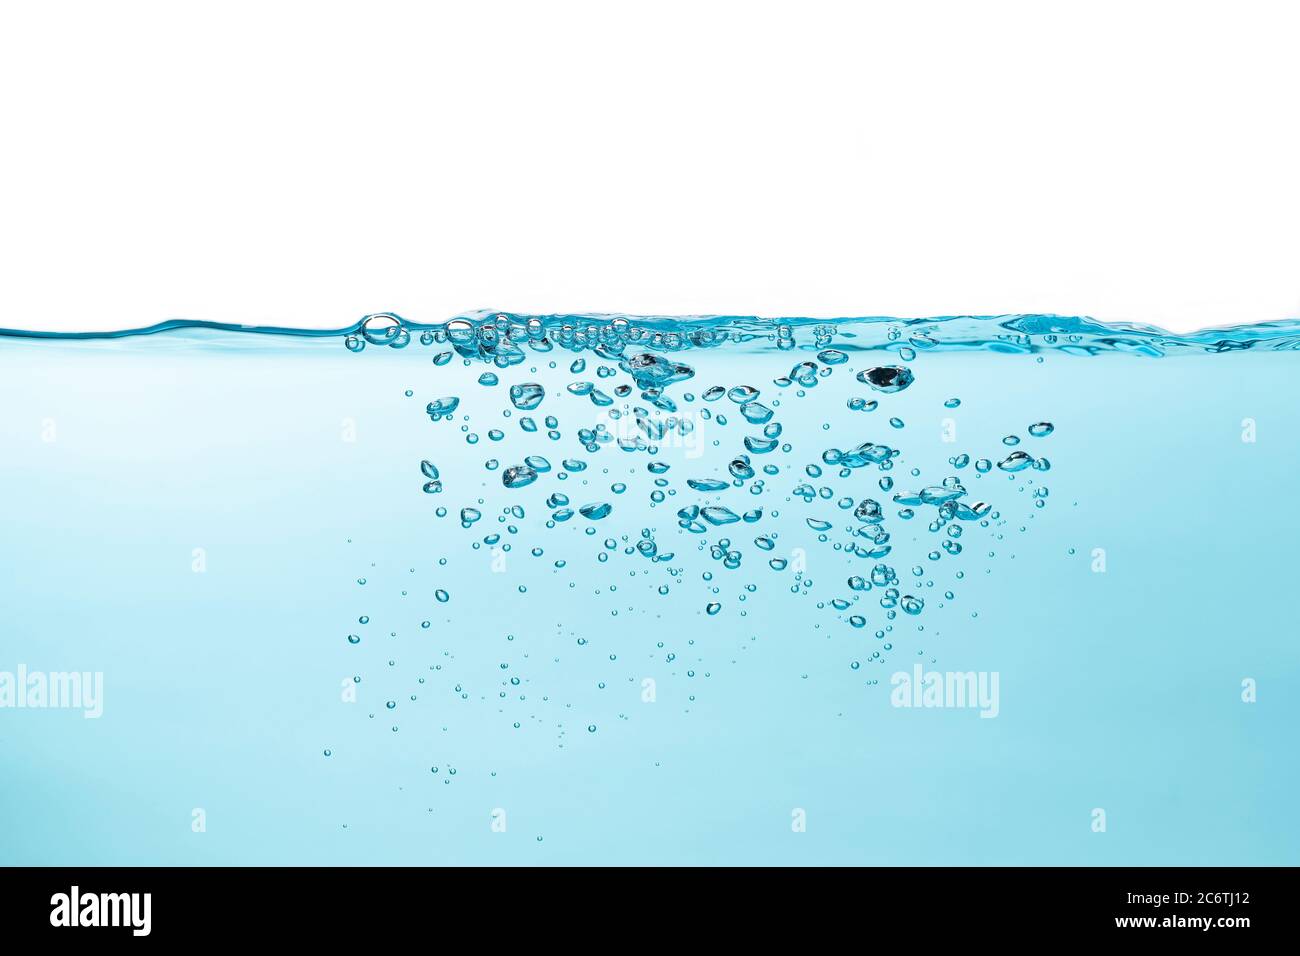 Burbujas de aire y salpicaduras de agua, salpicaduras de agua aisladas sobre fondo blanco y azul. Foto de stock